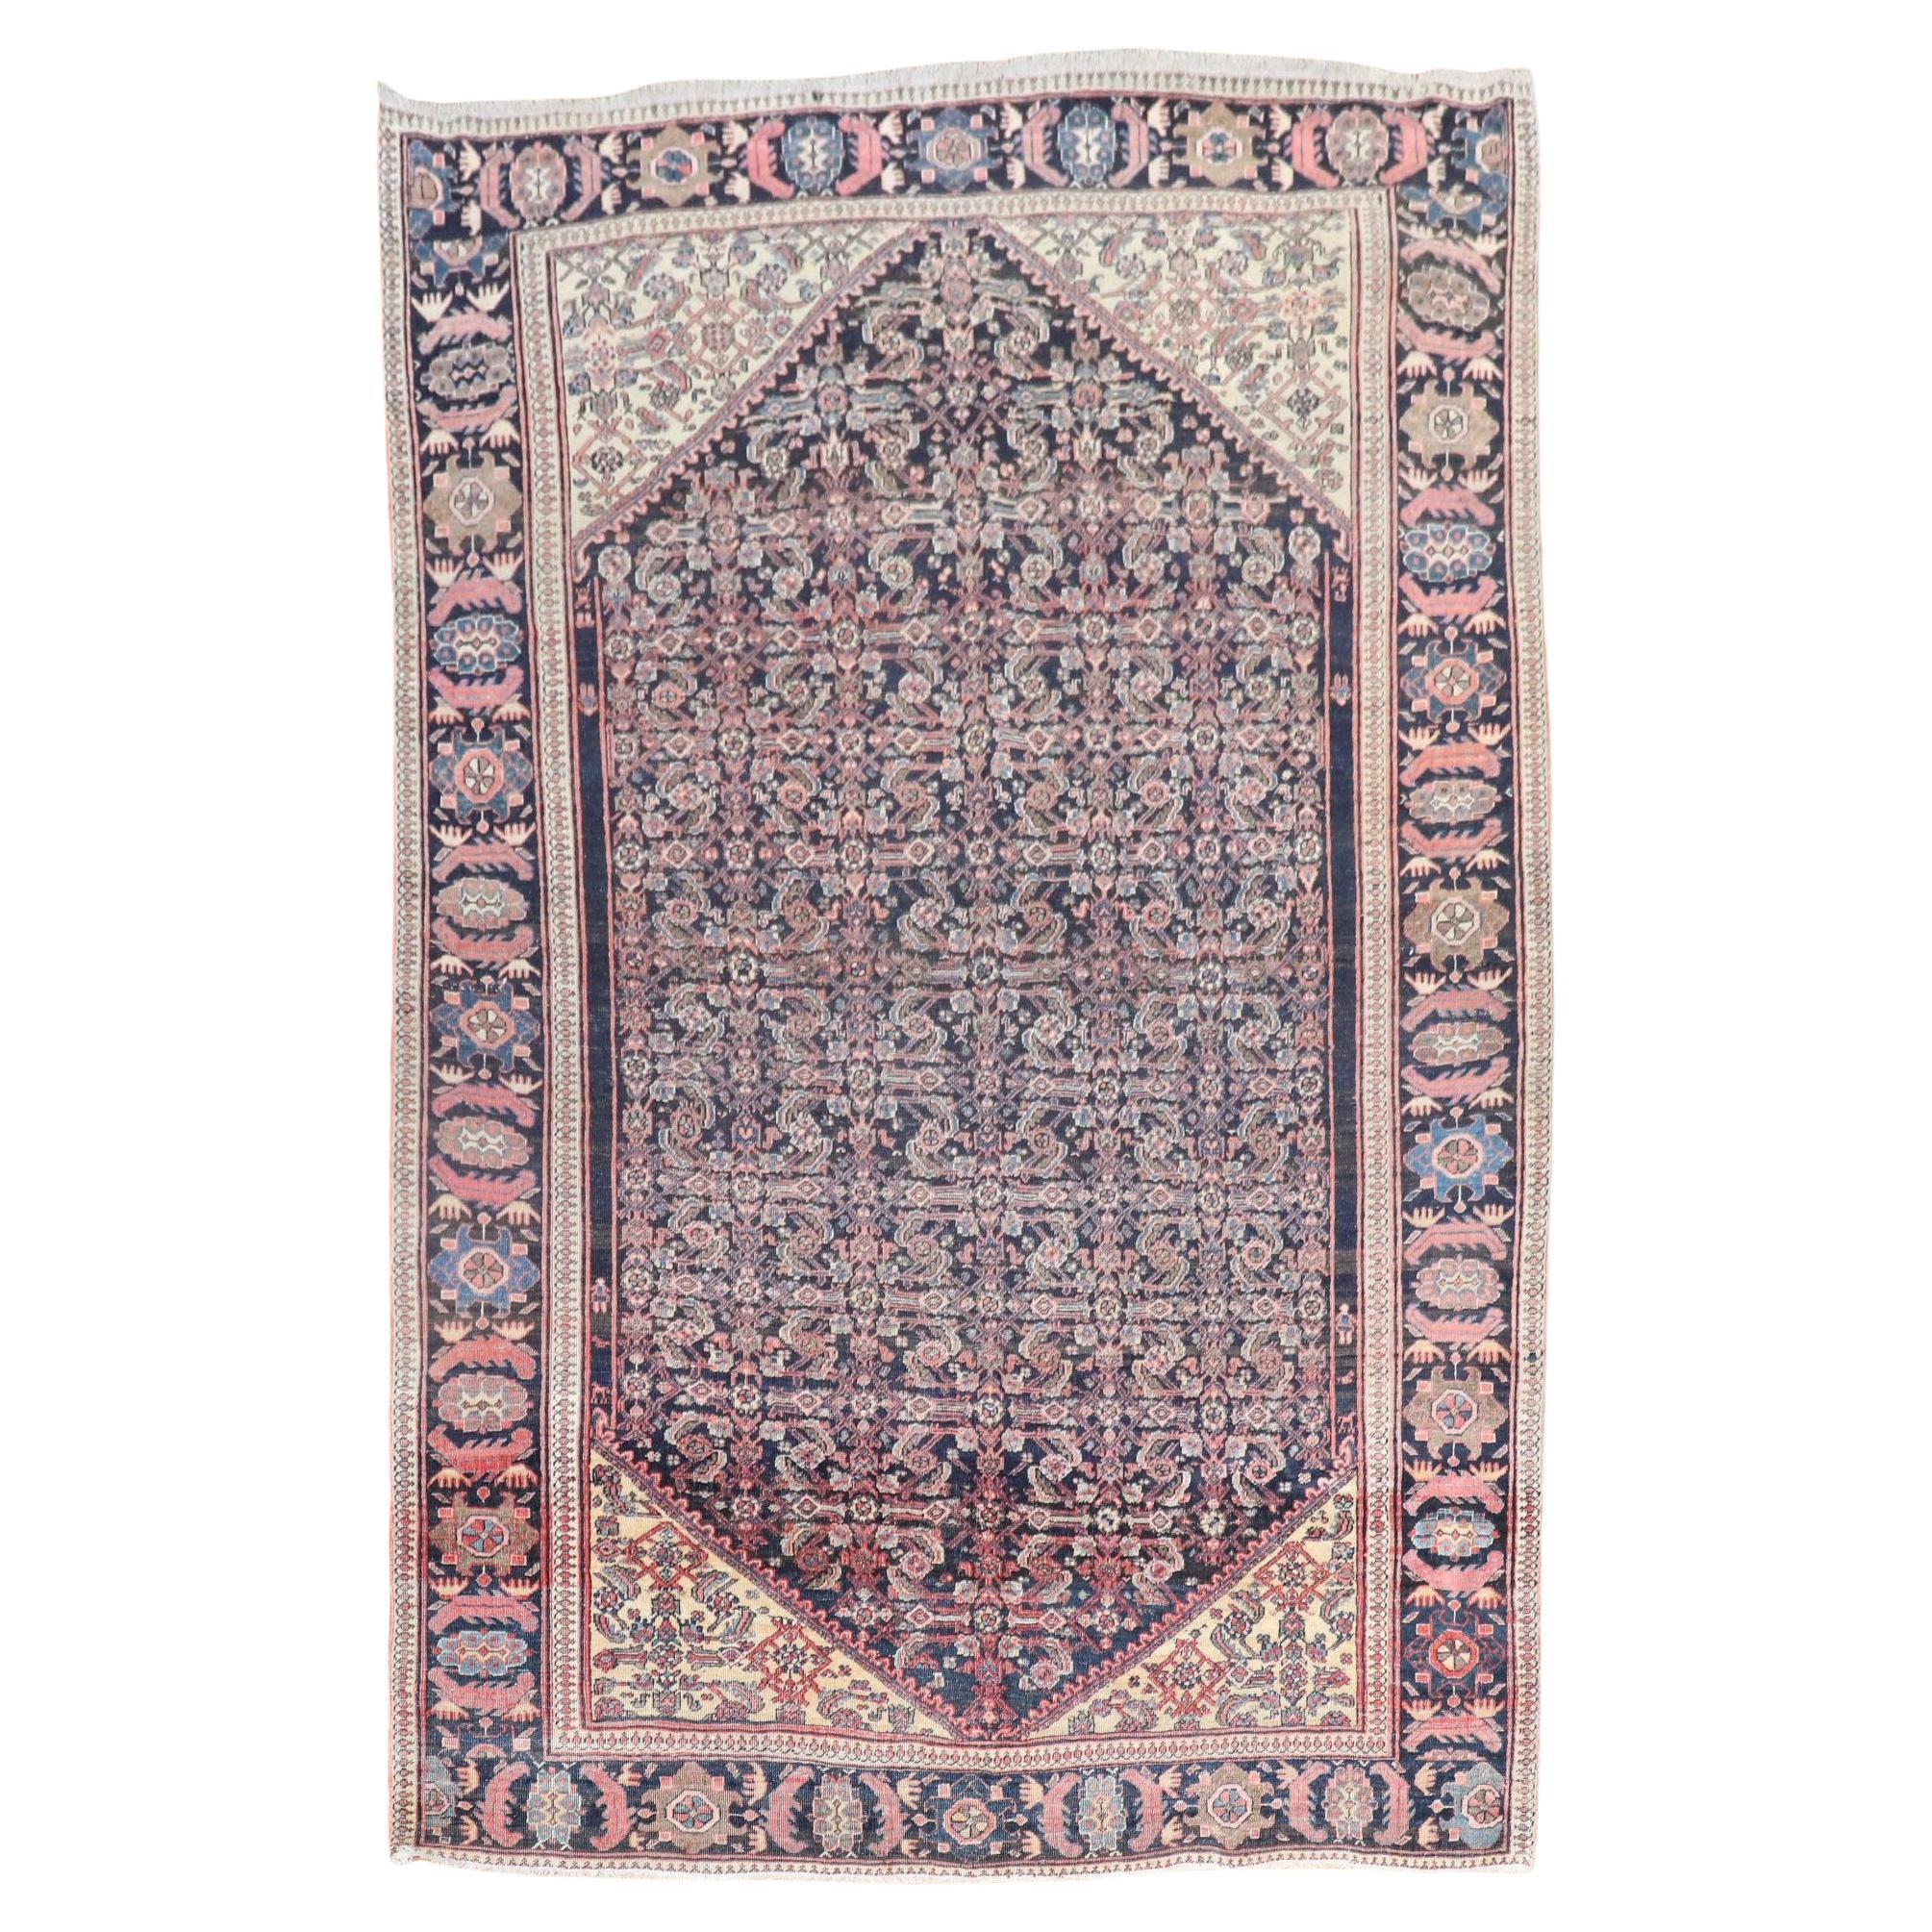 19th Century Antique Persian Sarouk Ferehan Rug